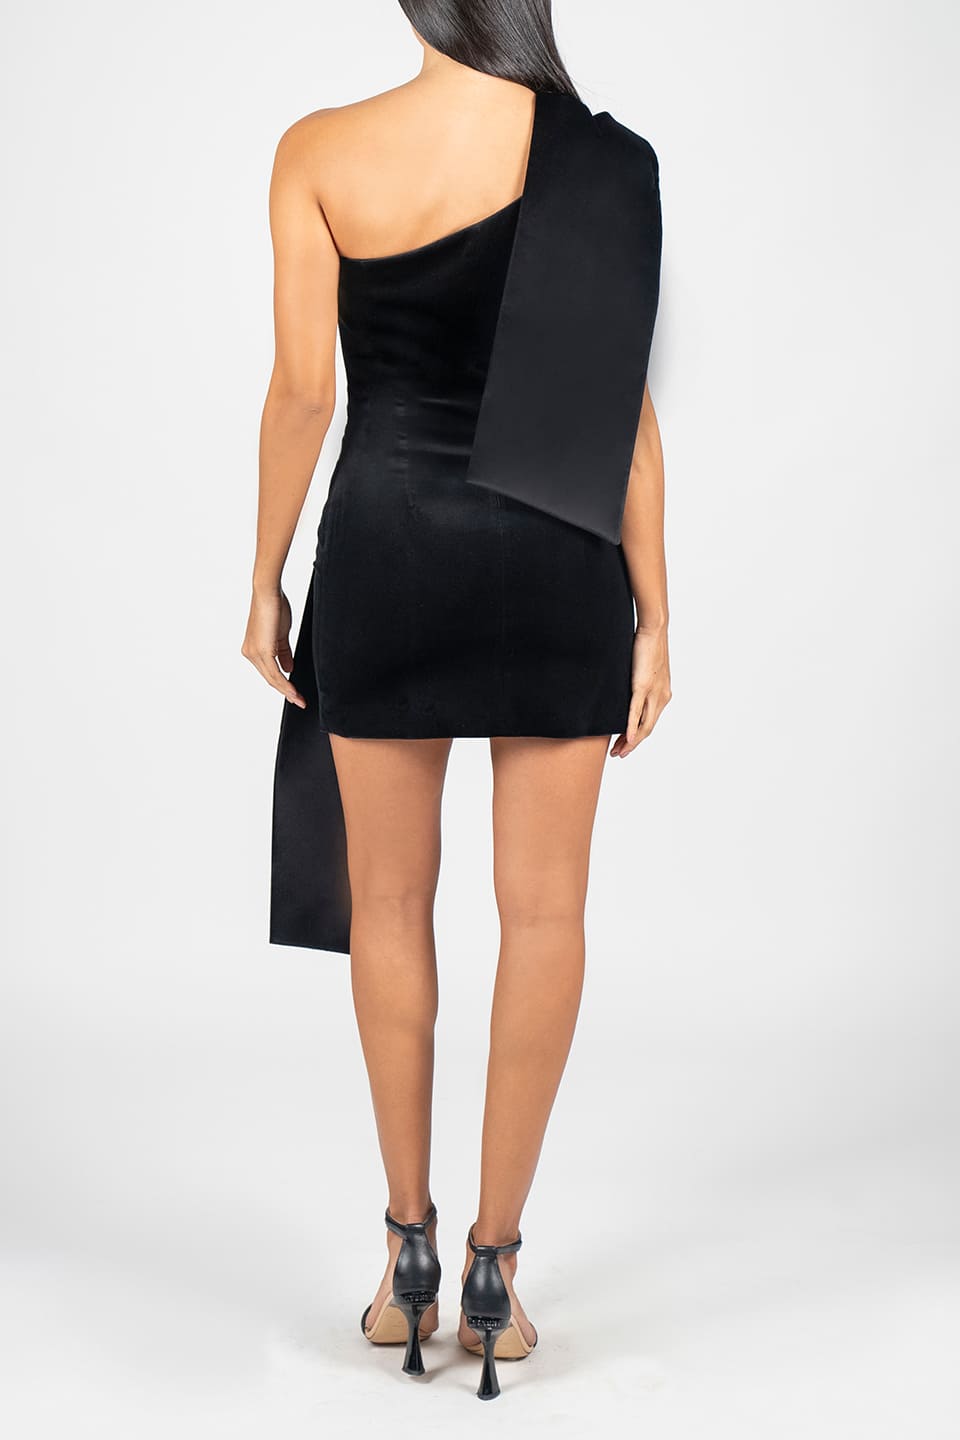 Thumbnail for Product gallery 2, Black Velvet Bow Mini Dress